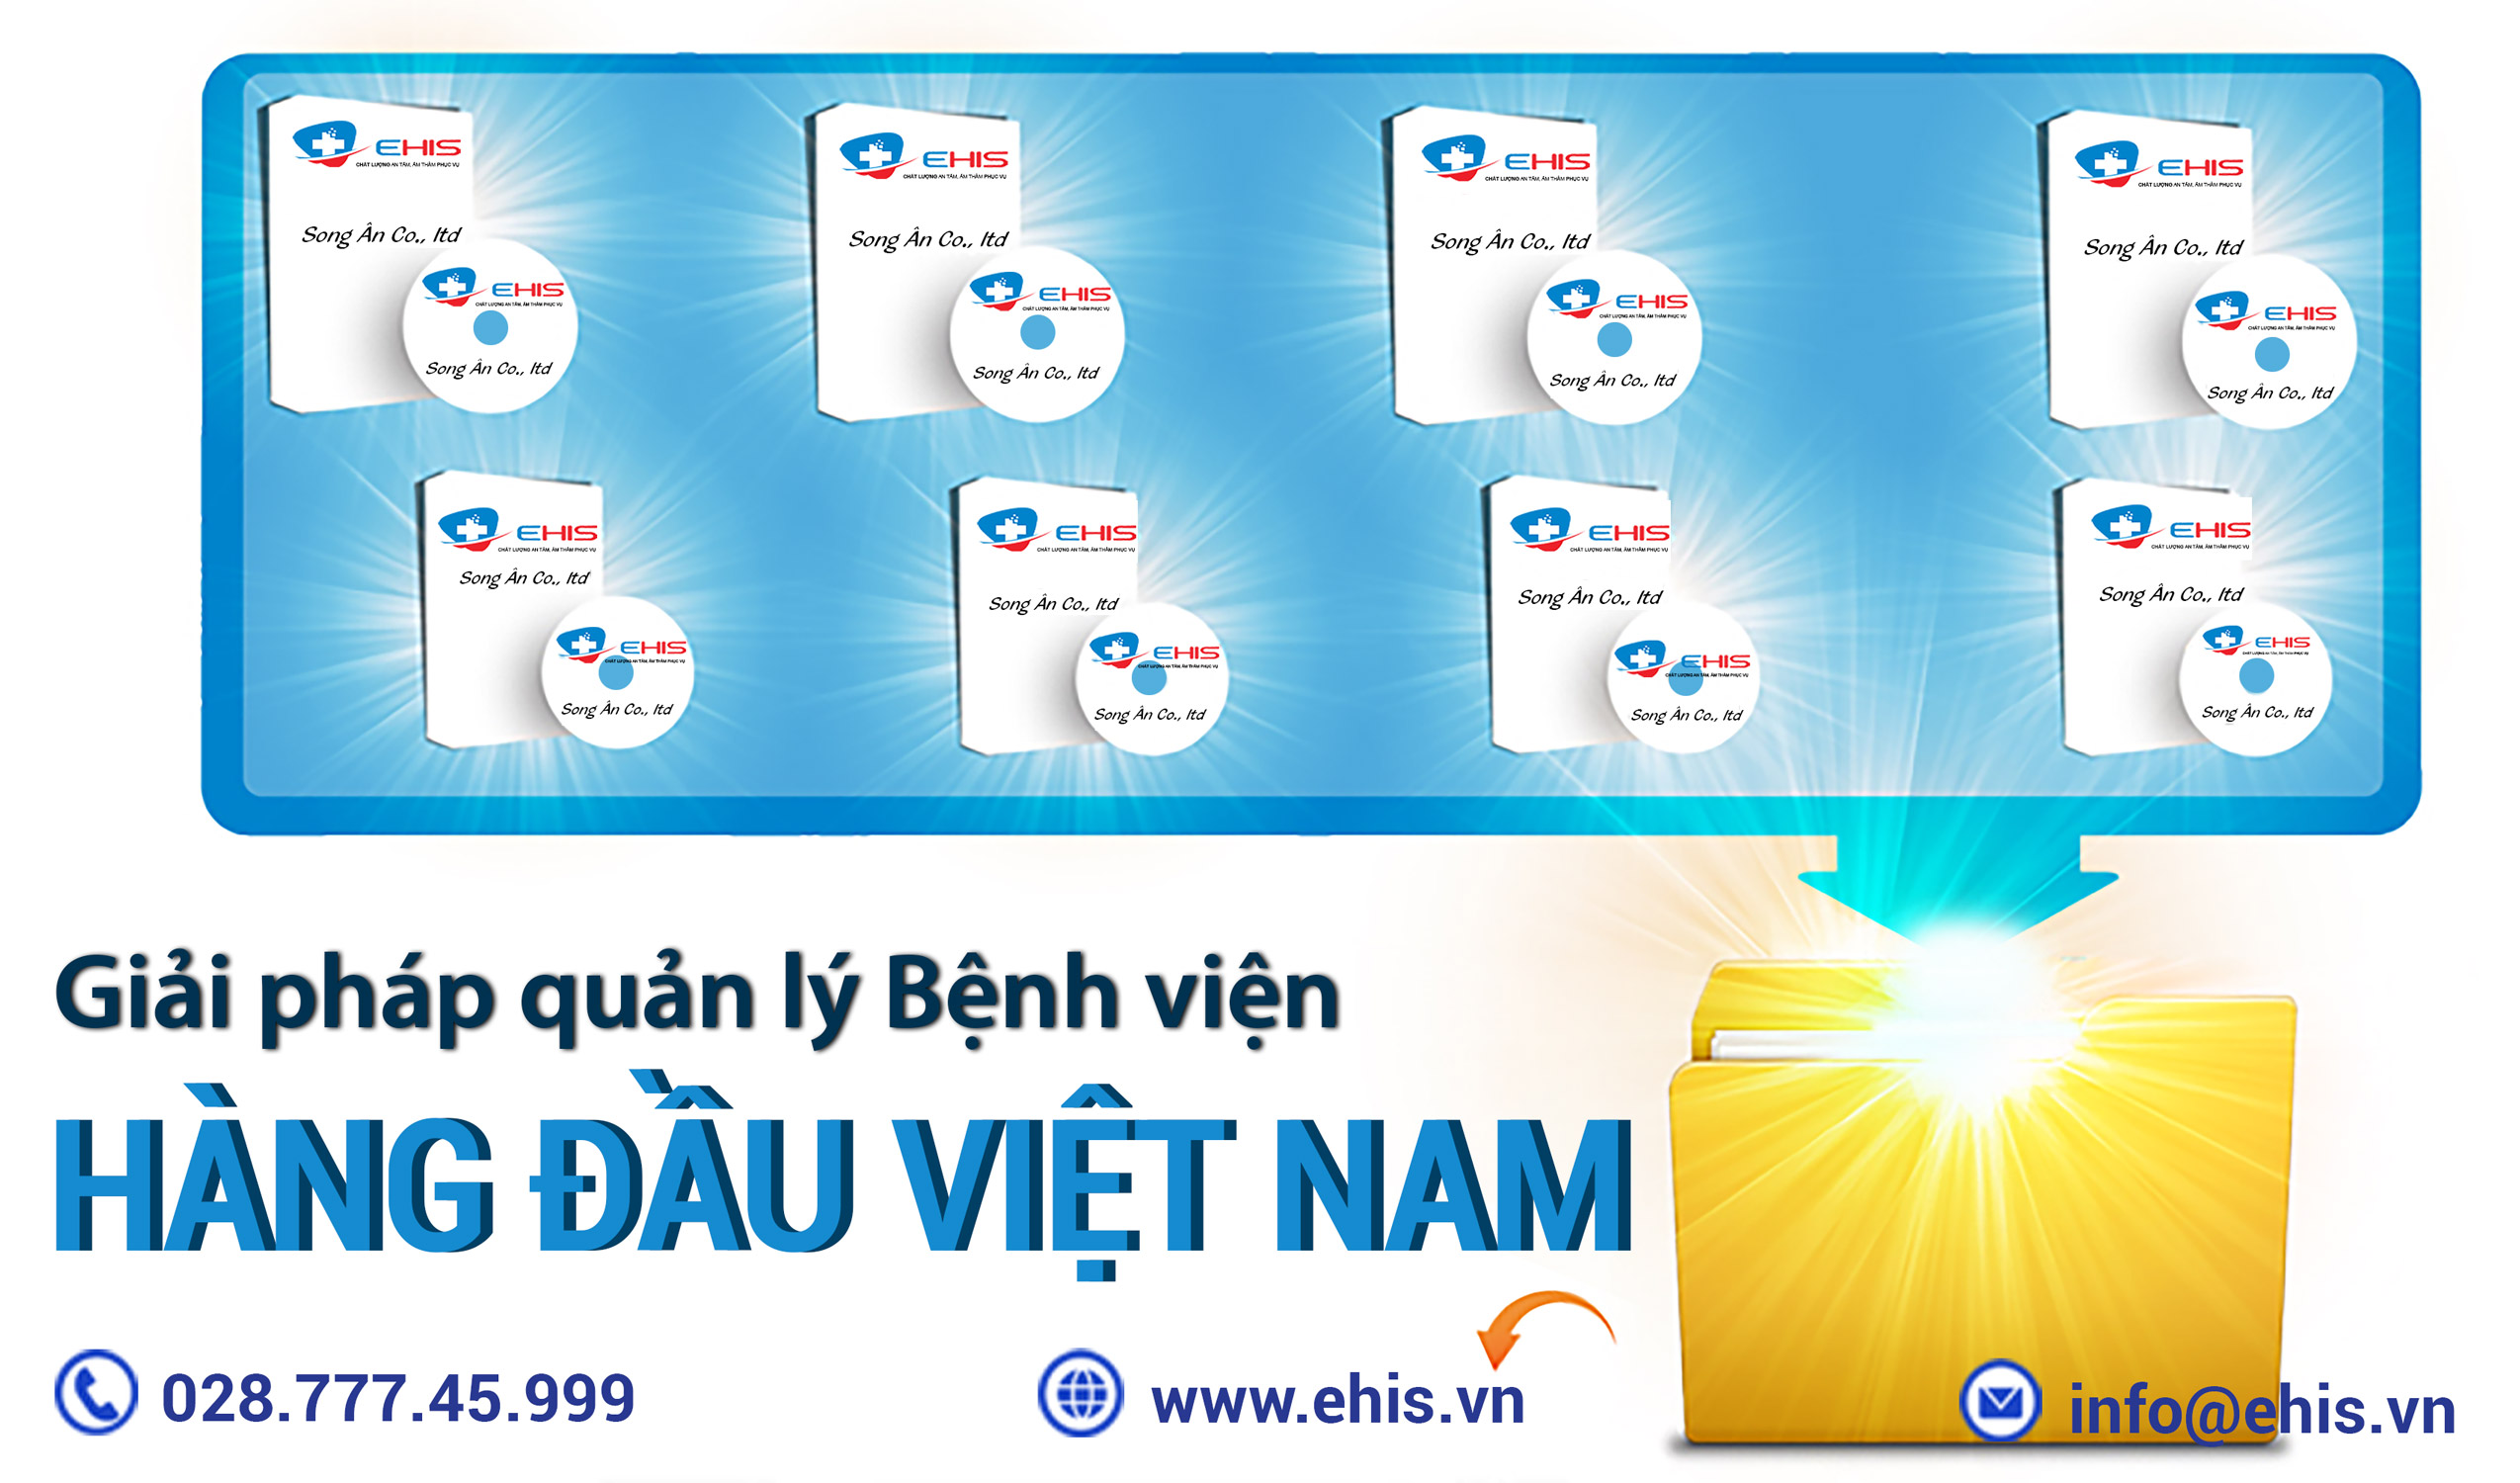 Hệ sinh thái Phần mềm quản lý bệnh viện Ehis - Giải pháp quản lý bệnh viện hàng đầu Việt Nam